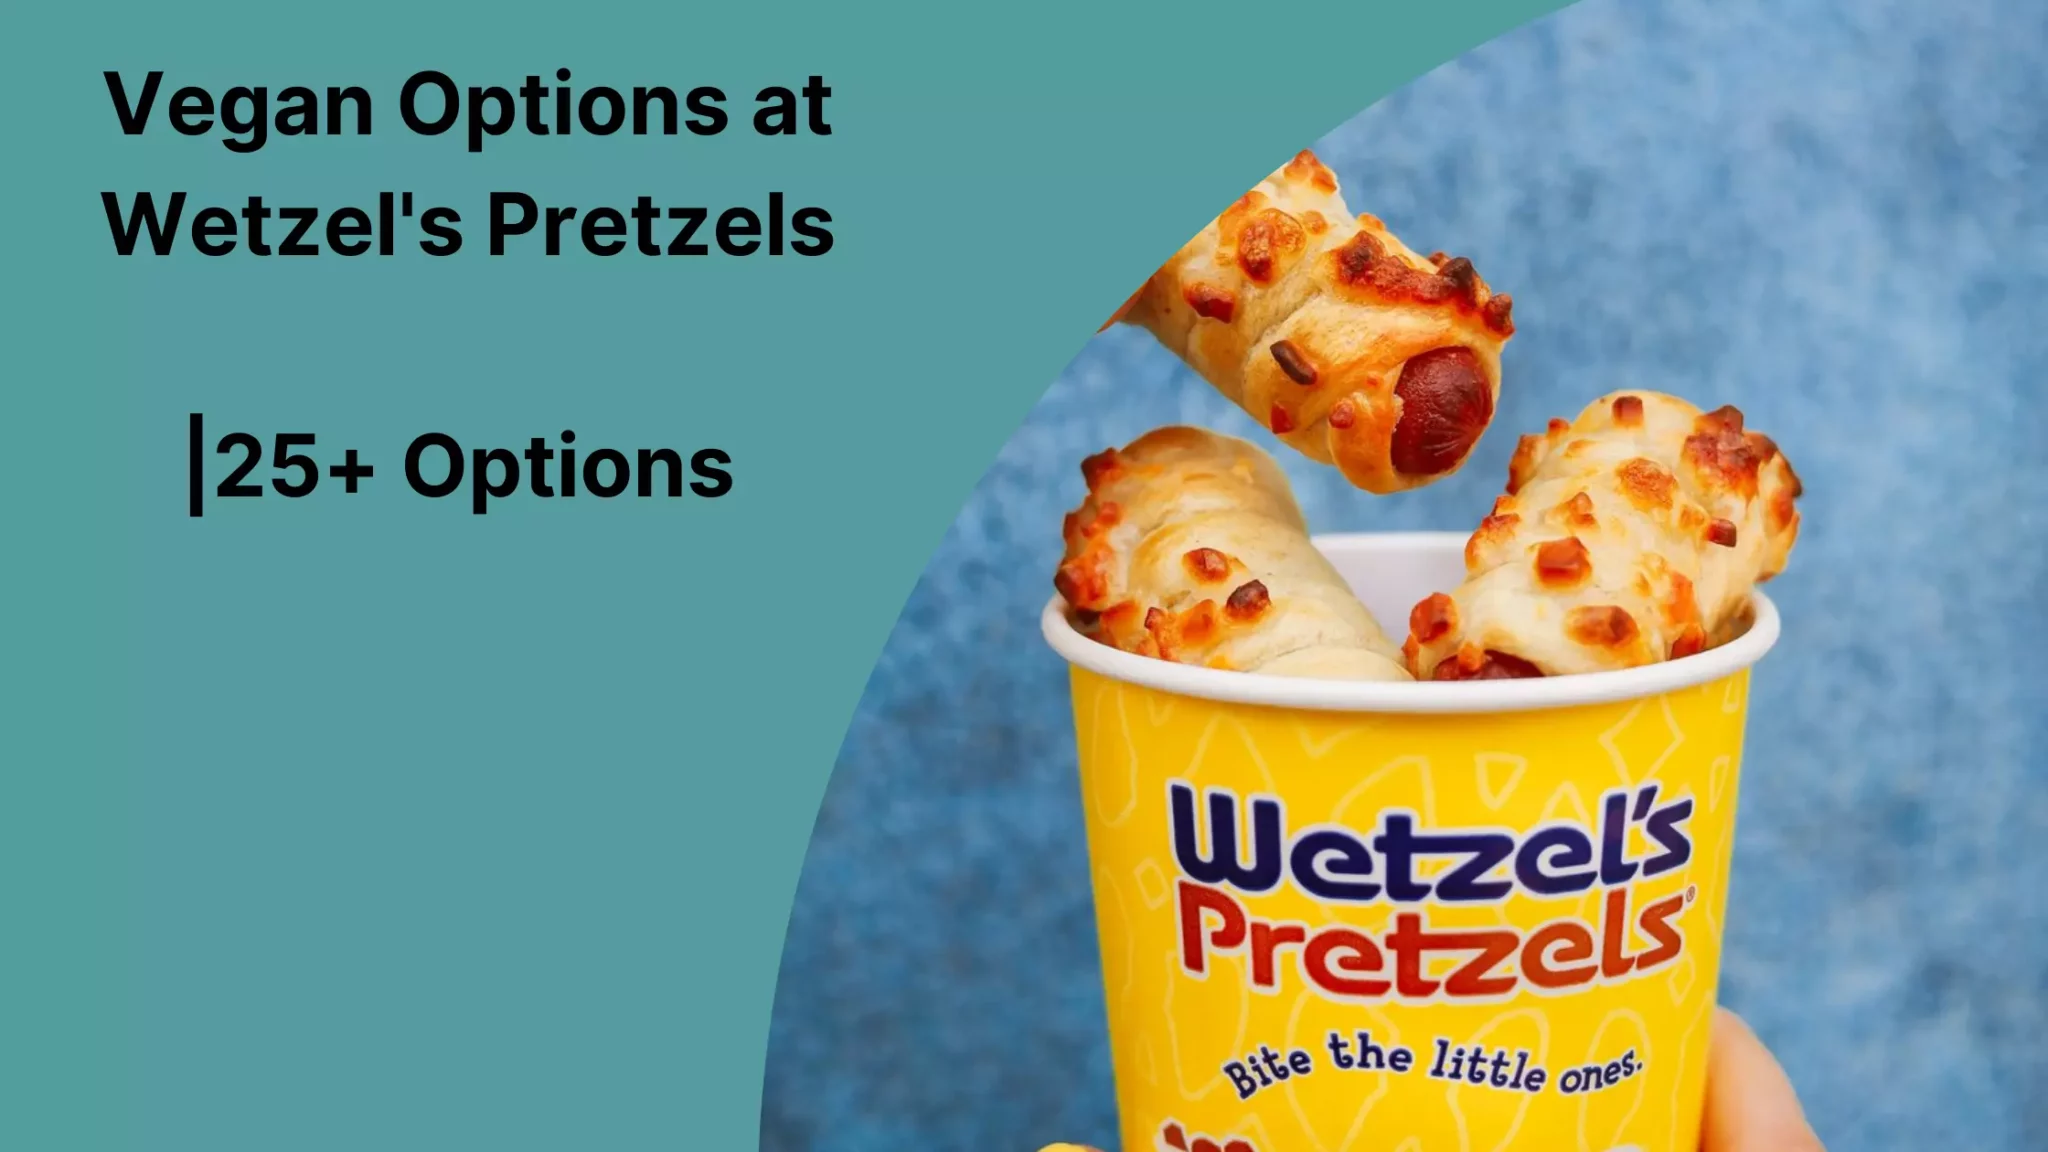 Vegan Options at Wetzel's Pretzels